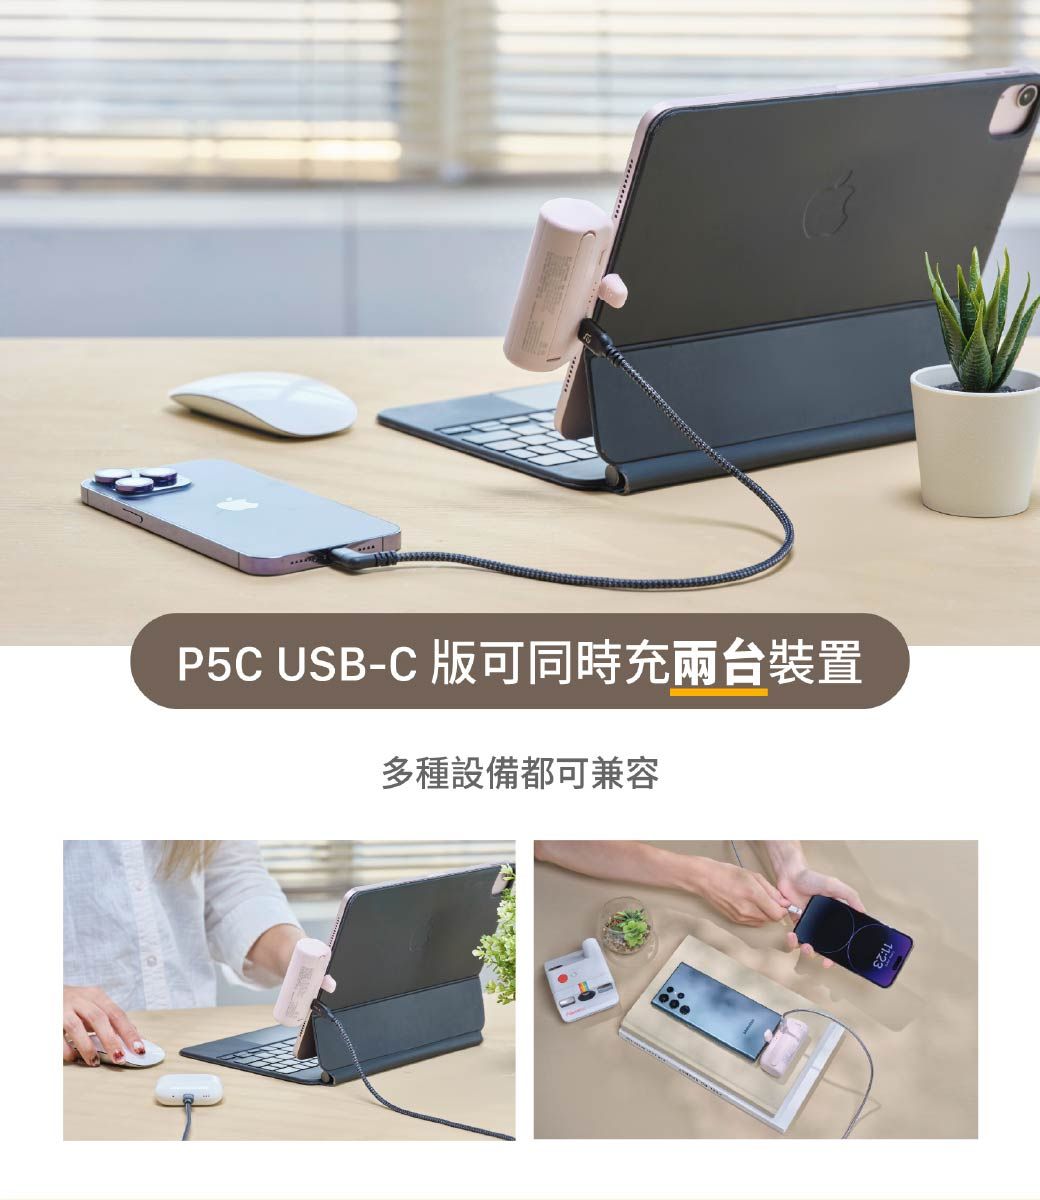 P5C USB-C iPɥRx˸mhس]Ƴiݮe11:23